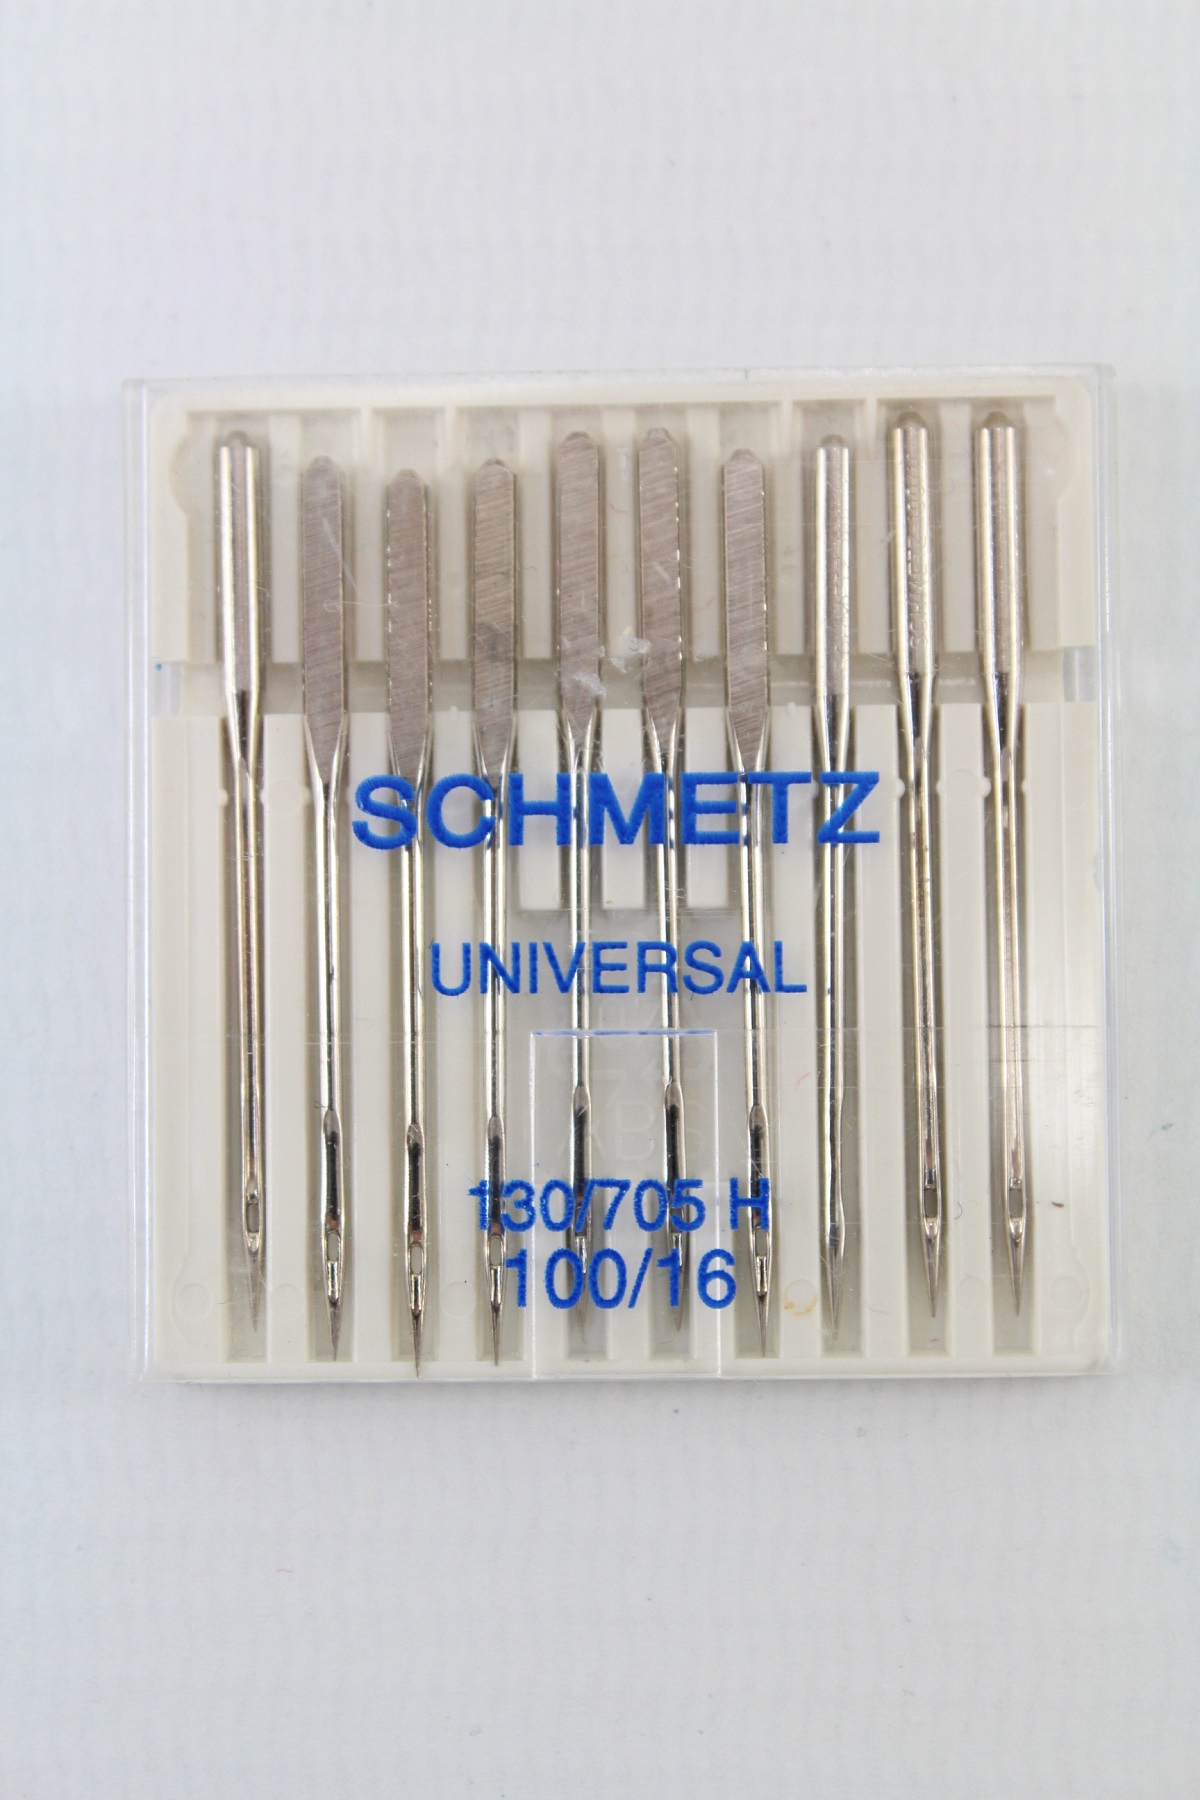 Schmetz Universal 130/705 H 100/16